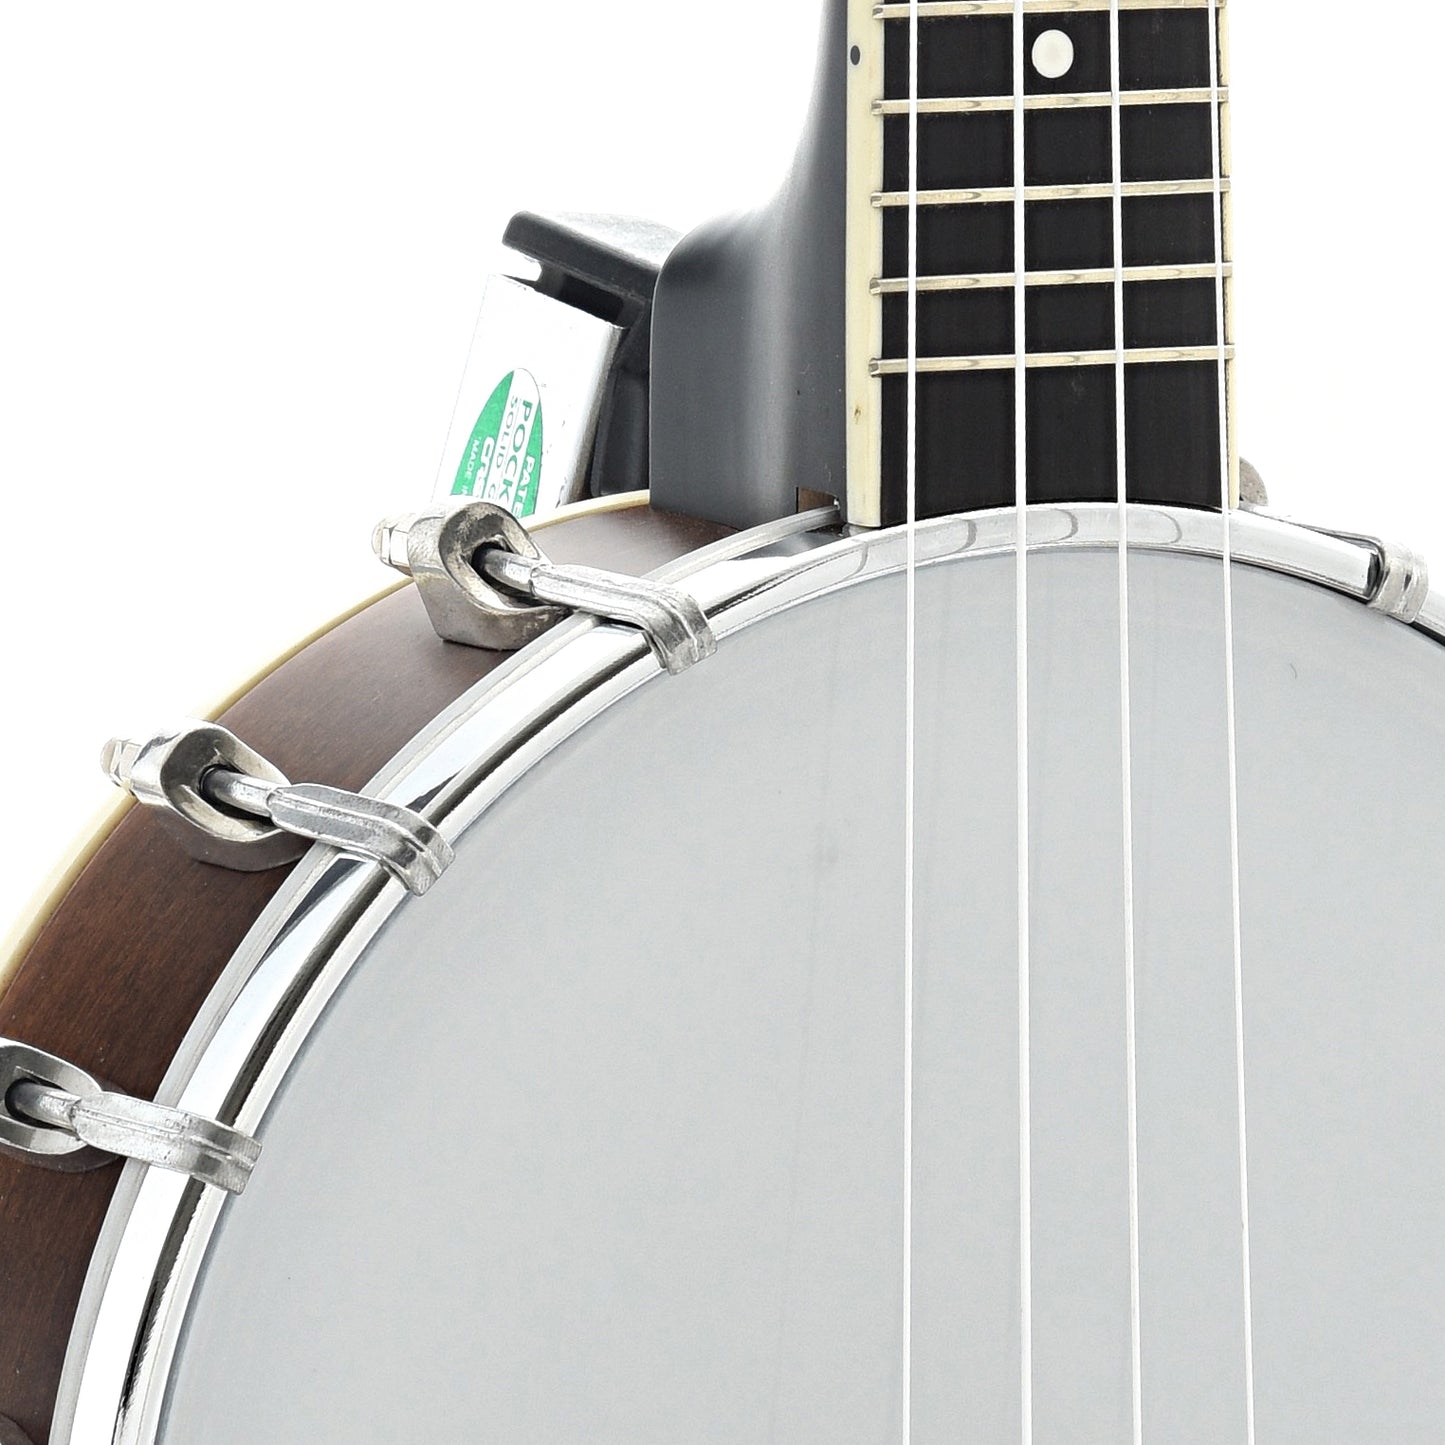 Image 4 of Gold Tone Concert Banjo Ukulele & Case - SKU# GTBUC : Product Type Banjo Ukuleles : Elderly Instruments